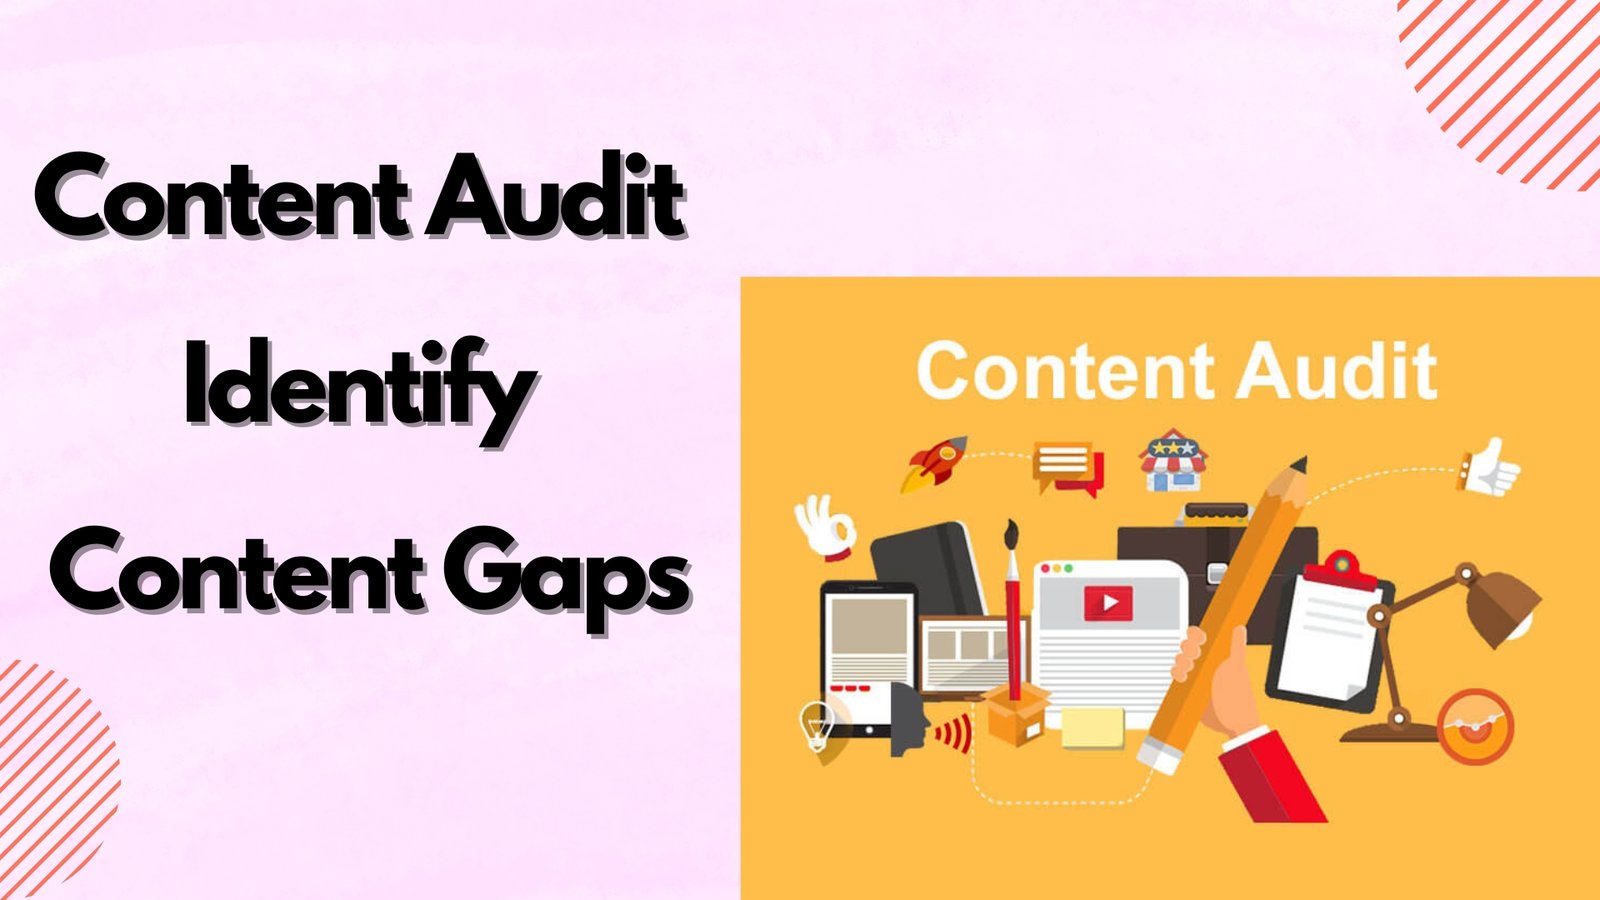 Content Audit - Identify Content Gaps